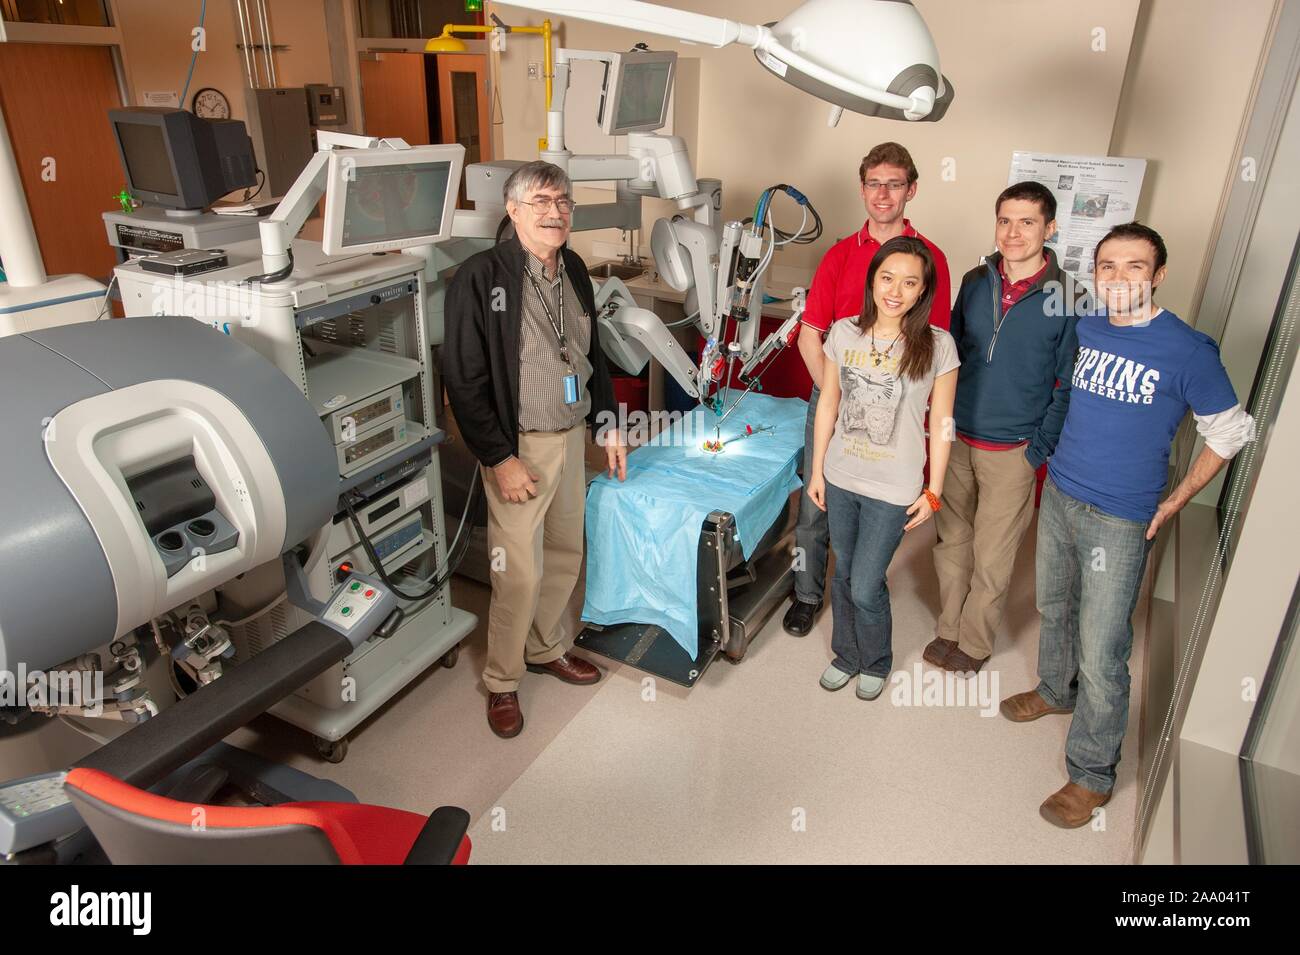 Long Shot du professeur Russell Taylor, debout avec quatre, souriant, Whiting School d'étudiants en génie, et d'un robot chirurgical da Vinci, dans une fausse salle d'opération à la Johns Hopkins University, Baltimore, Maryland, le 6 avril 2009. À partir de la collection photographique de Homewood. () Banque D'Images